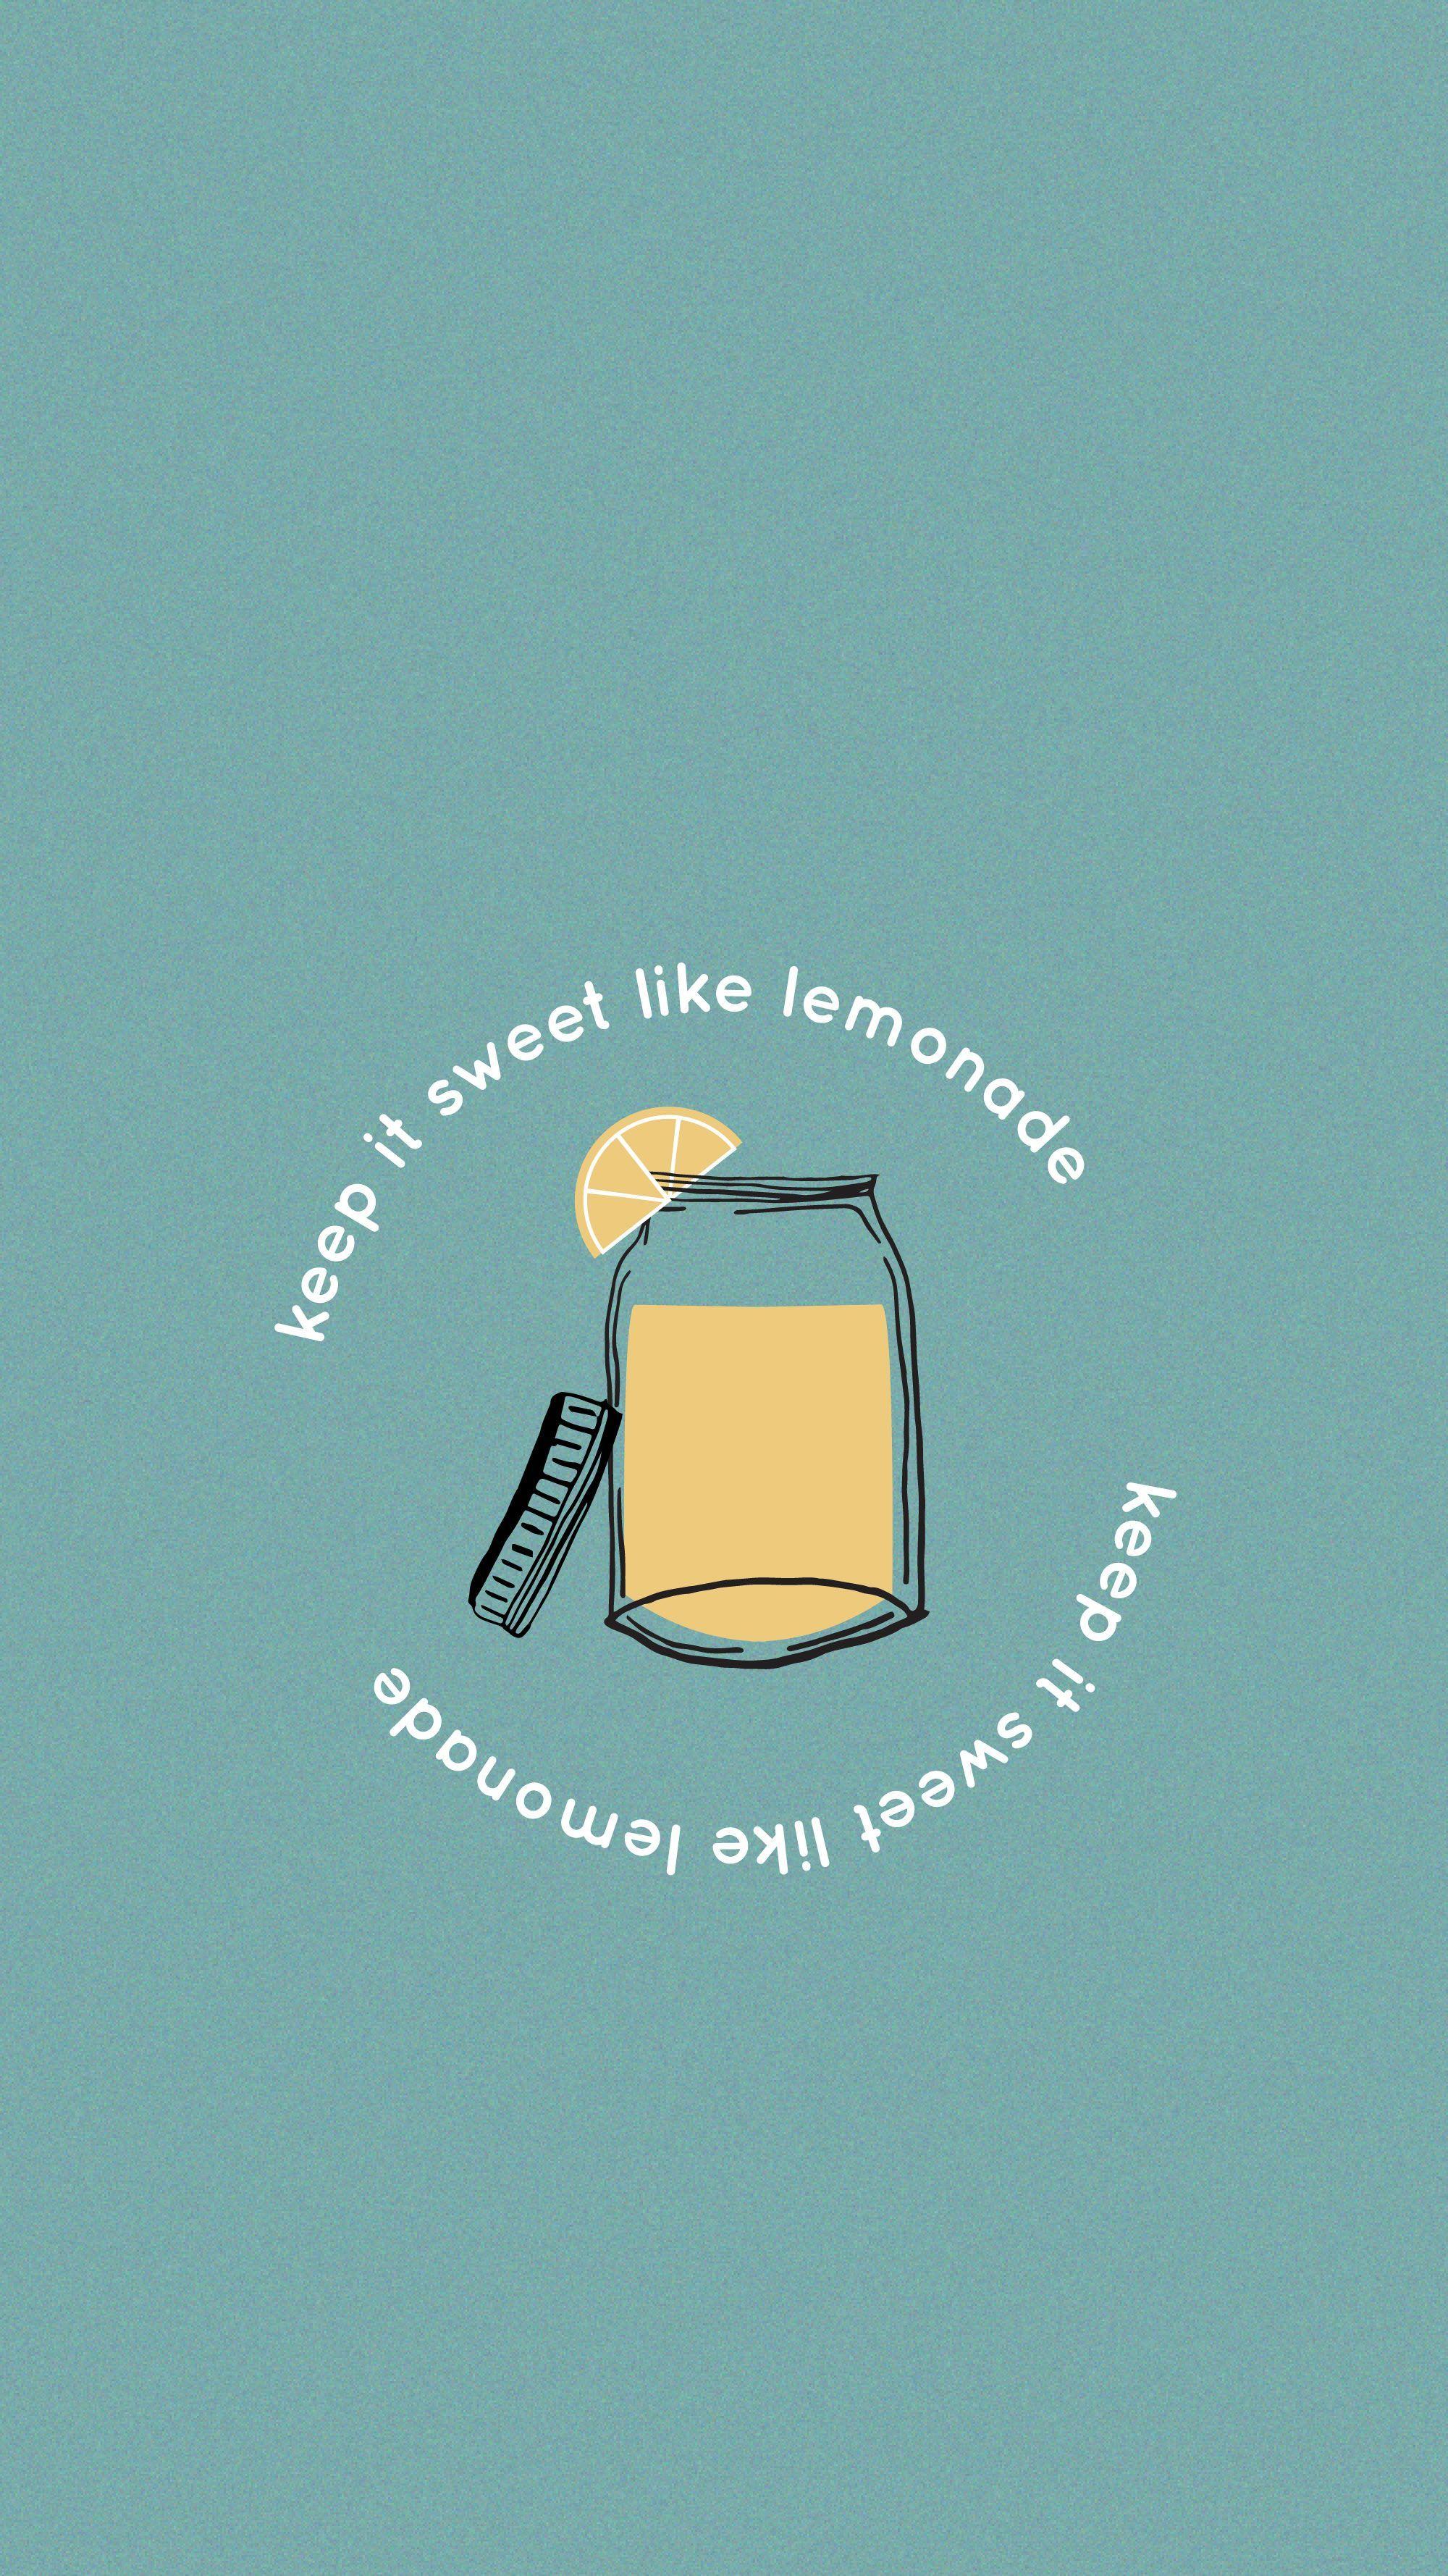 Keep It Sweet Like Lemonade Matt Wertz Wallpaper #iphone #mattwertz